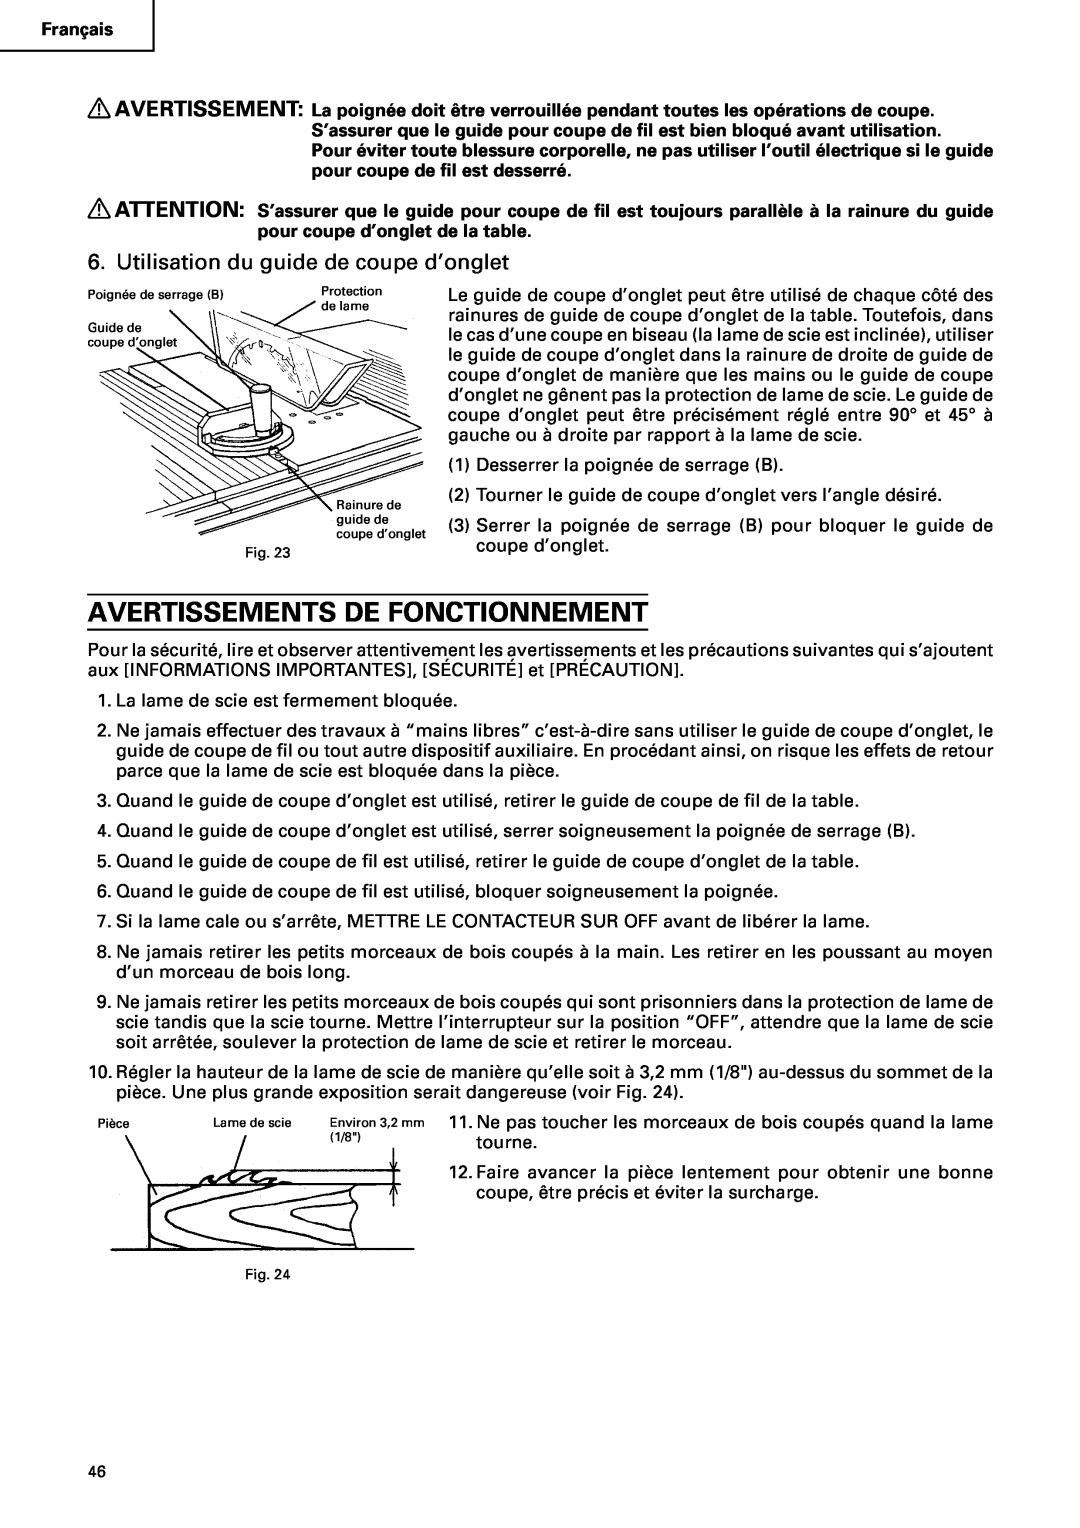 Hitachi C10RA2 instruction manual Avertissements De Fonctionnement, Utilisation du guide de coupe d’onglet 